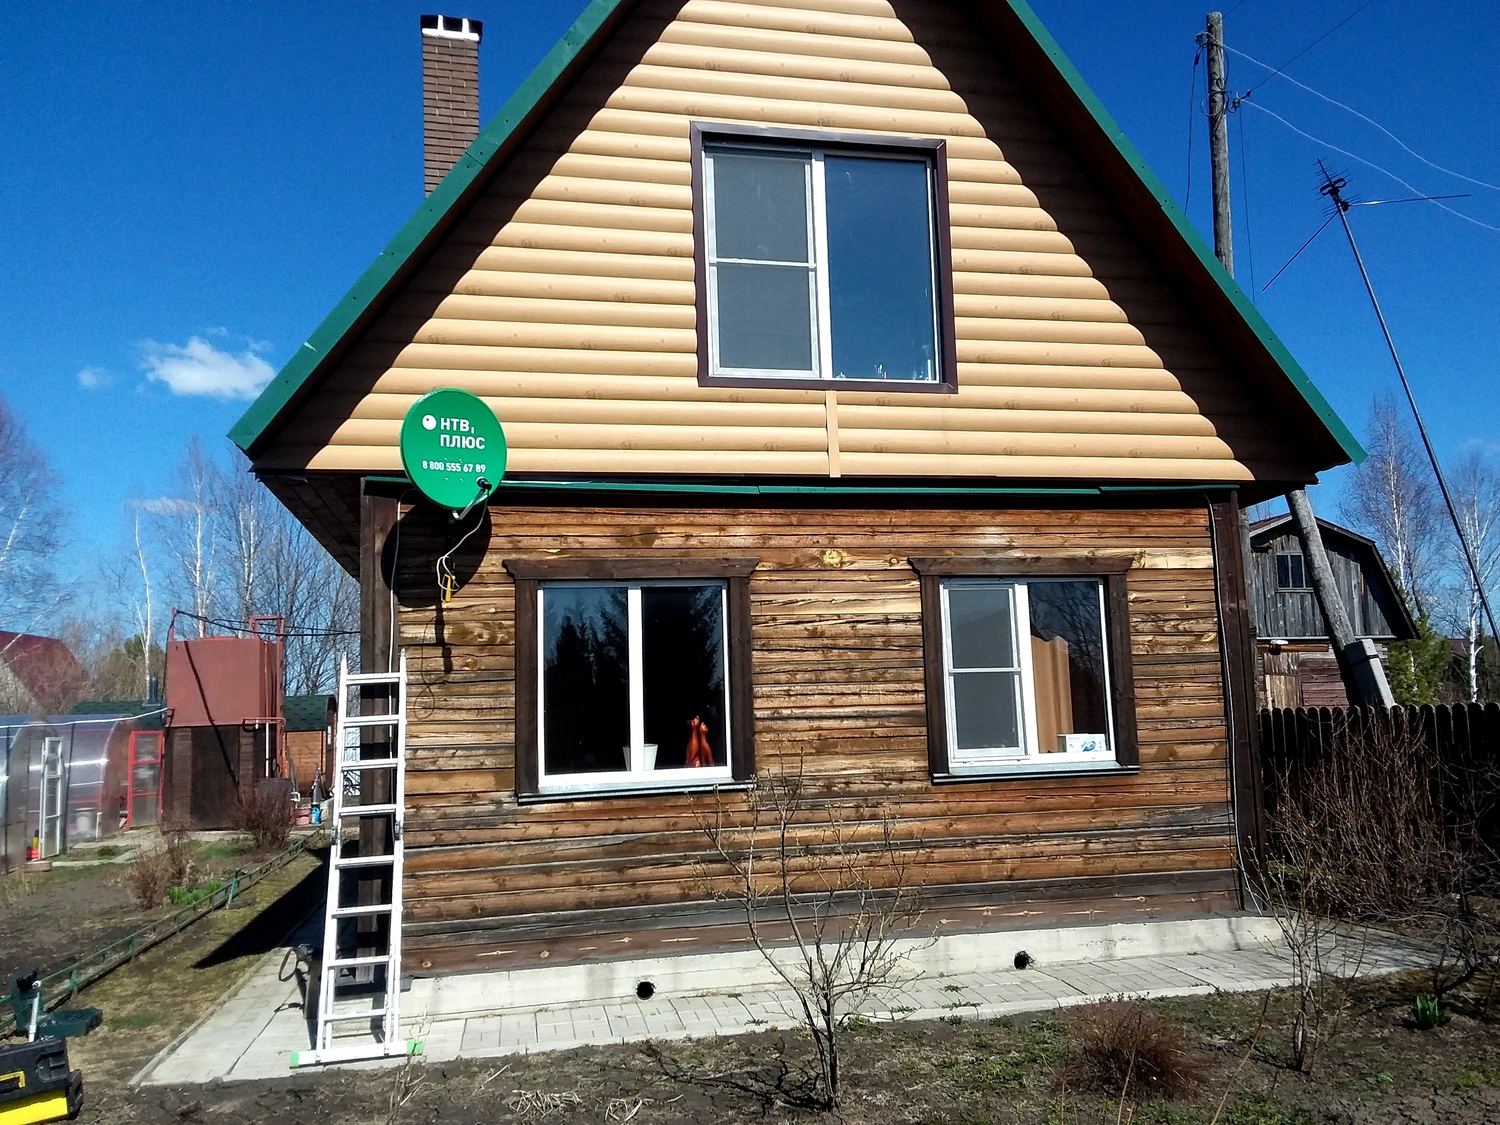 Комплект НТВ плюс Восток установлен в Колыванском районе новосибирской области в садовом товариществе  Надежда/